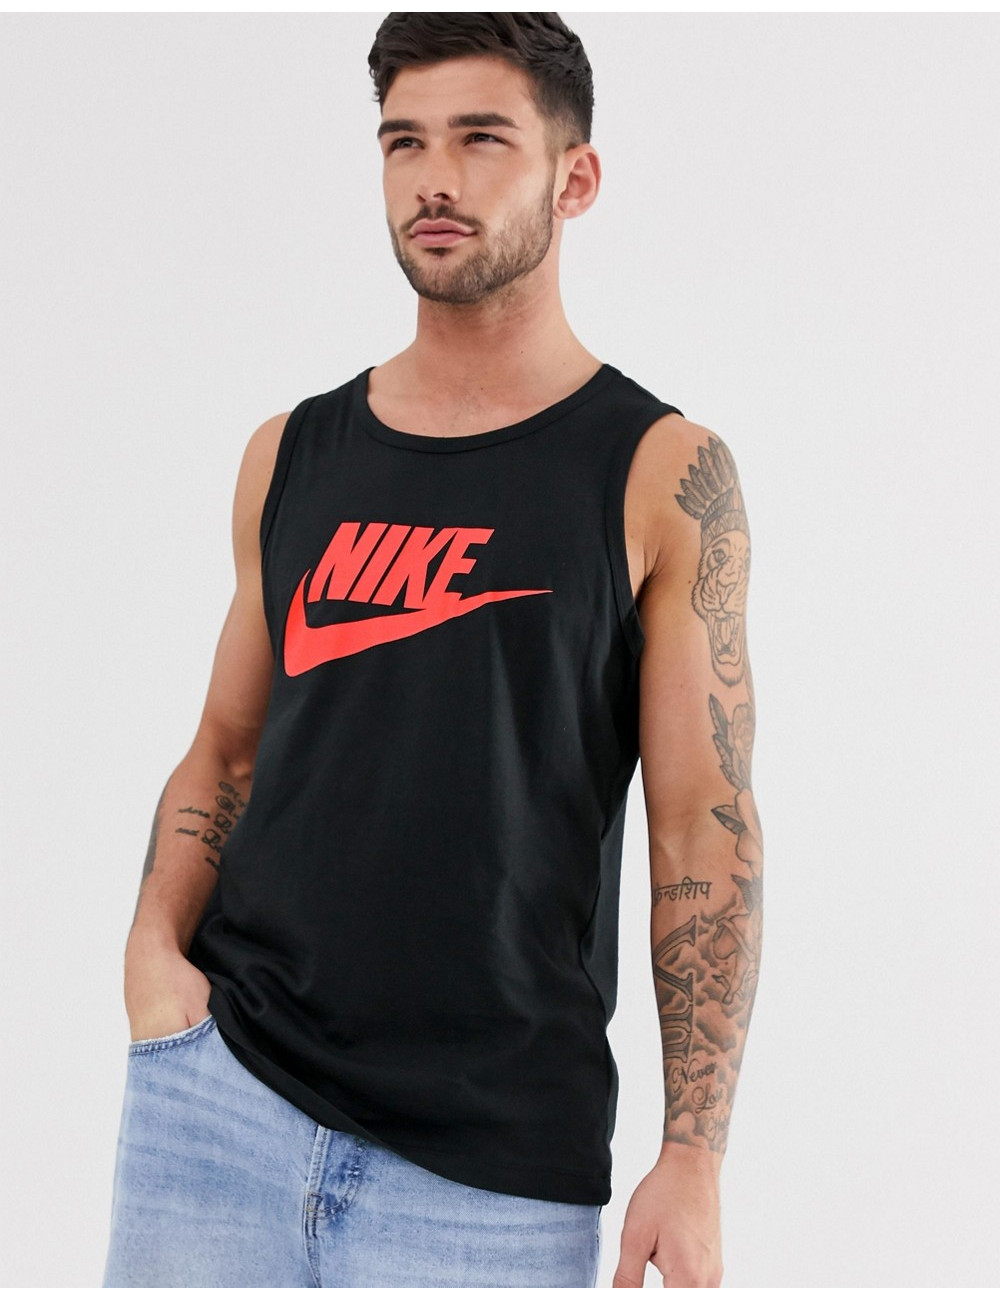 Nike logo vest in black